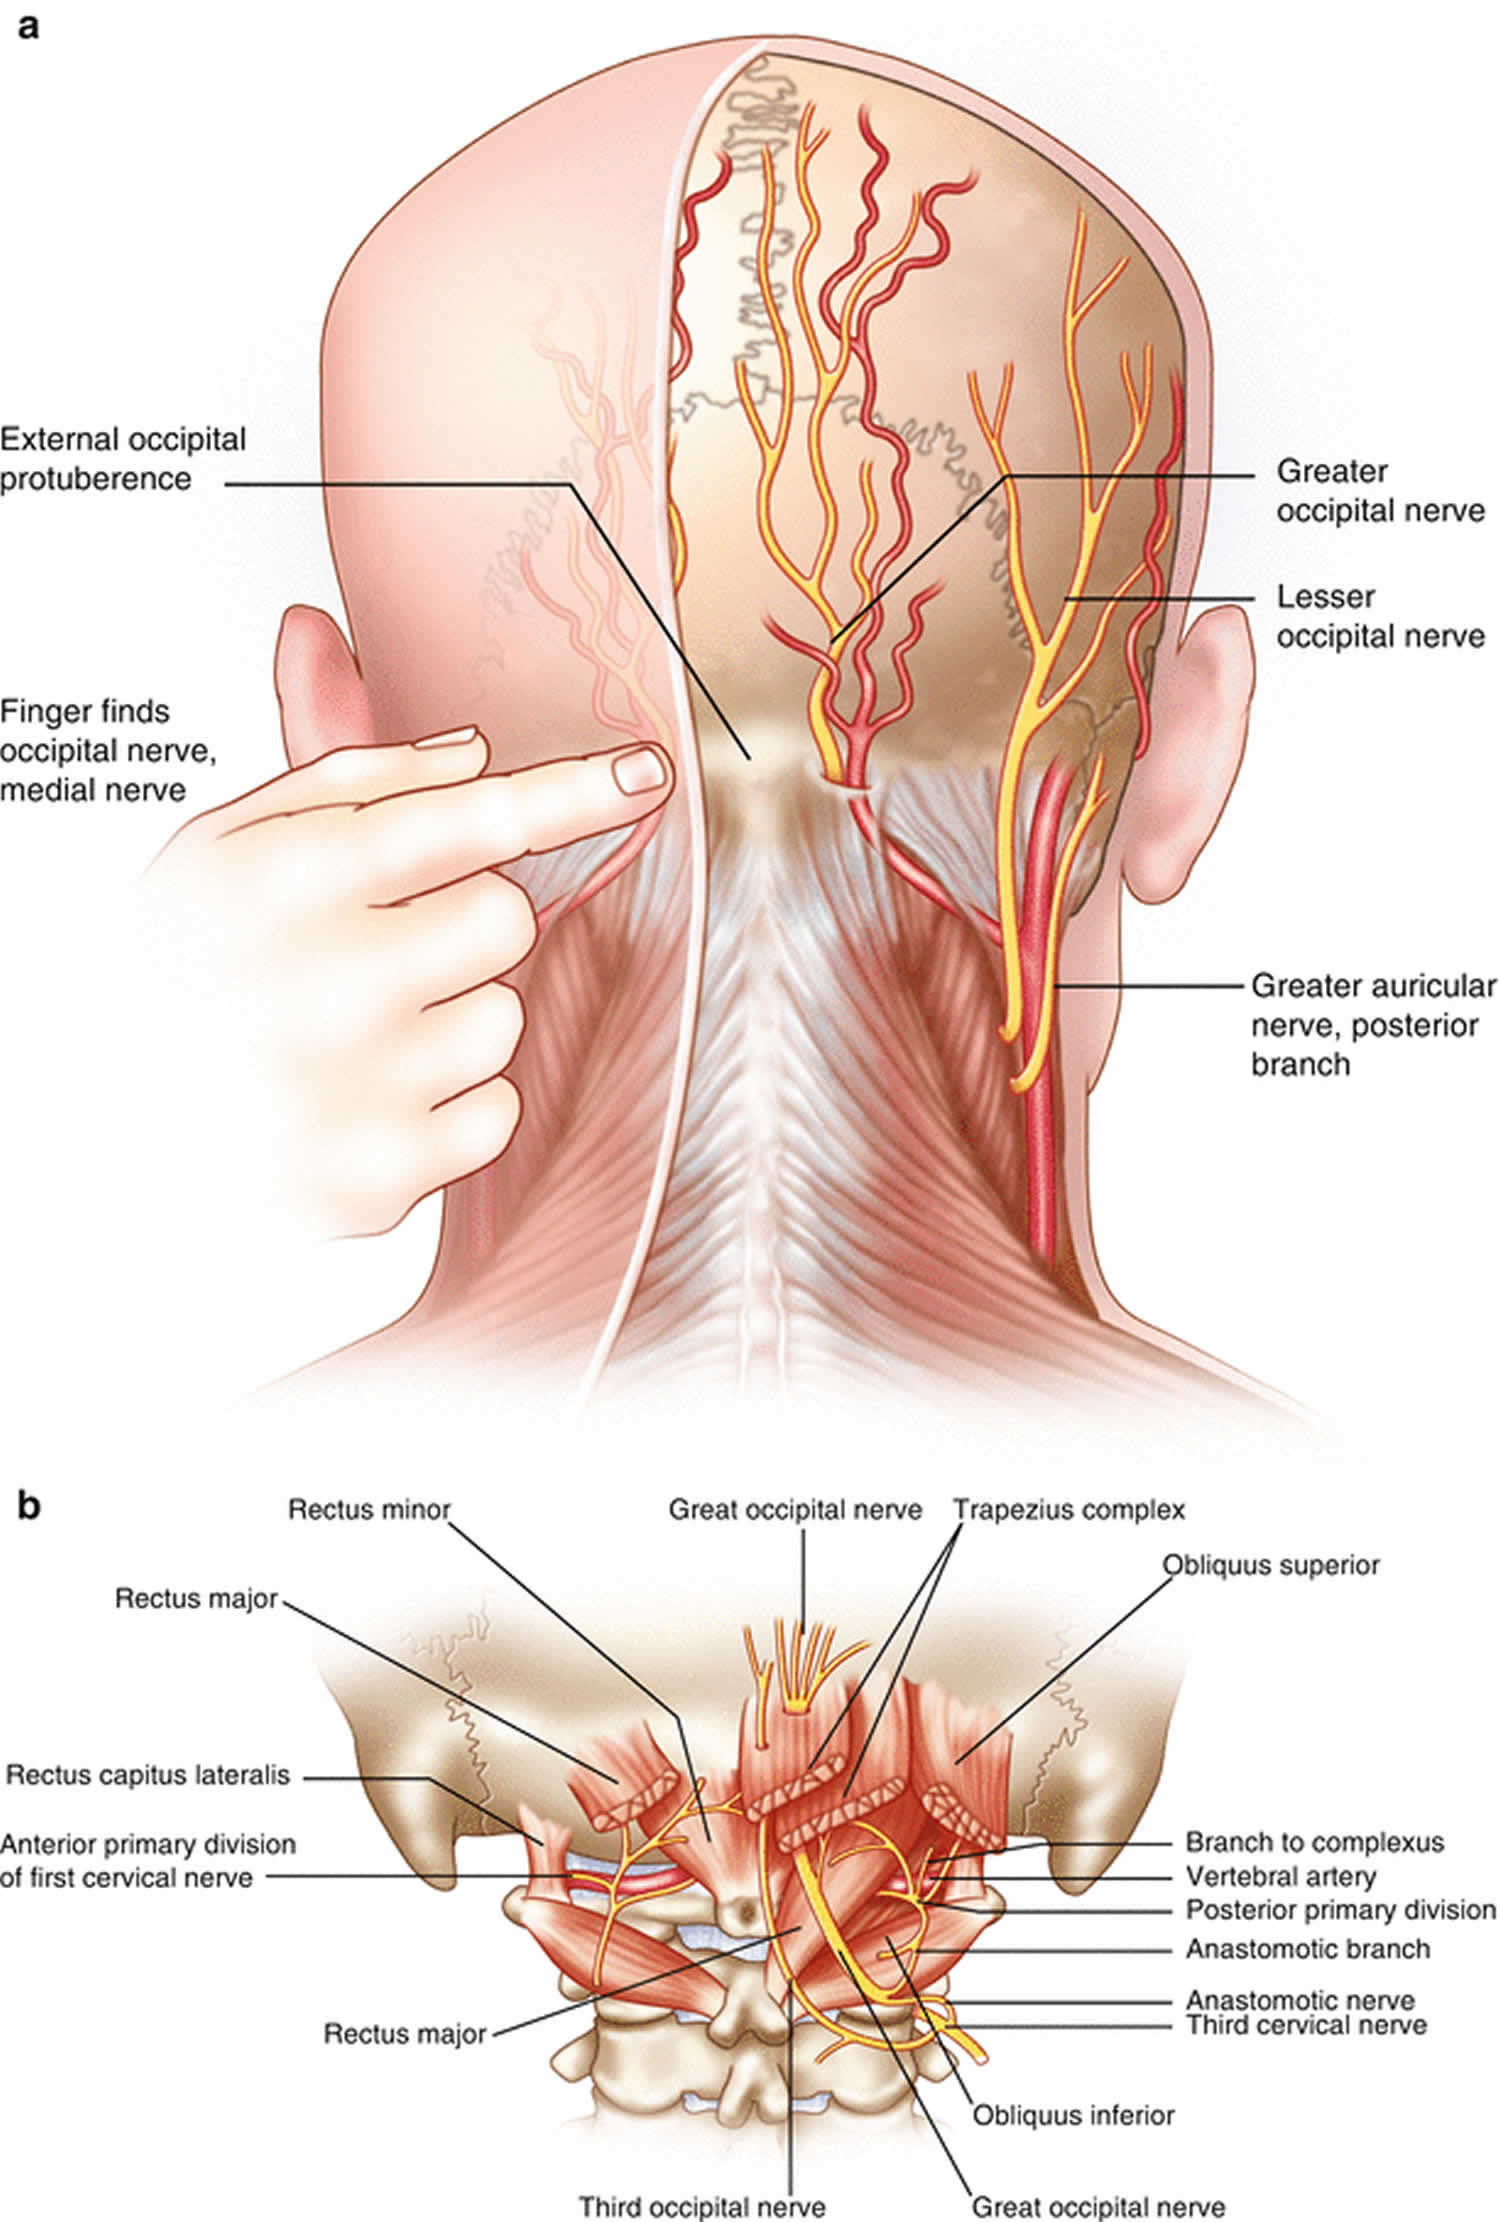 枕神經解剖構造(資料來源為網路).jpg